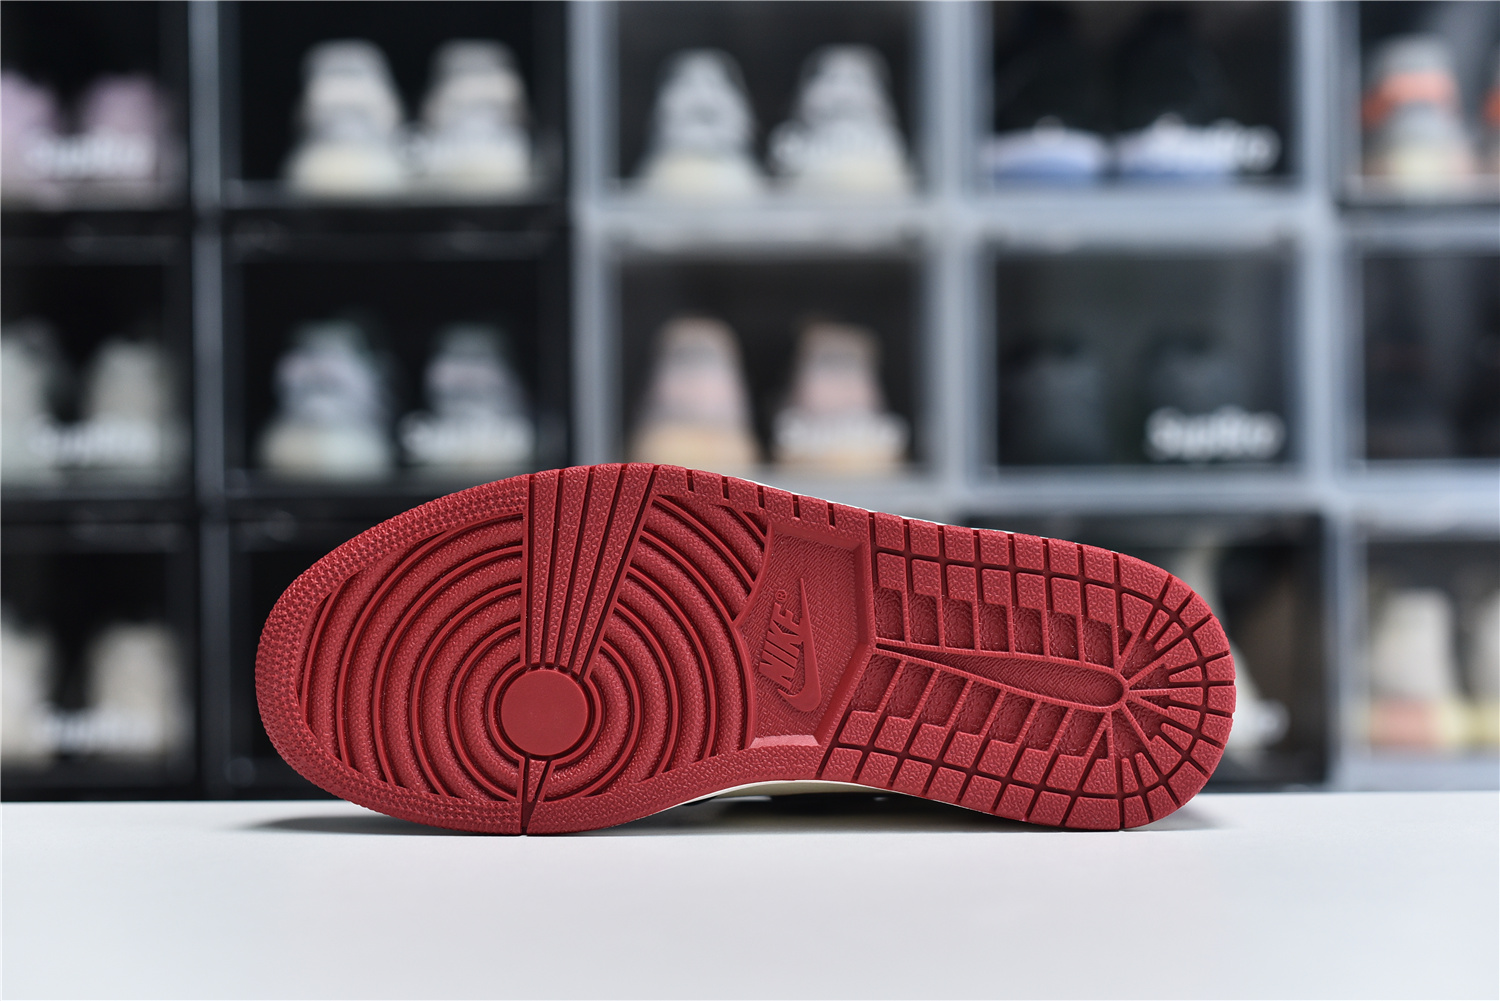 Nike Air Jordan 1 Retro High Og Red Black White Men Sneakers 555088 610 Kickbulk 3 - kickbulk.org